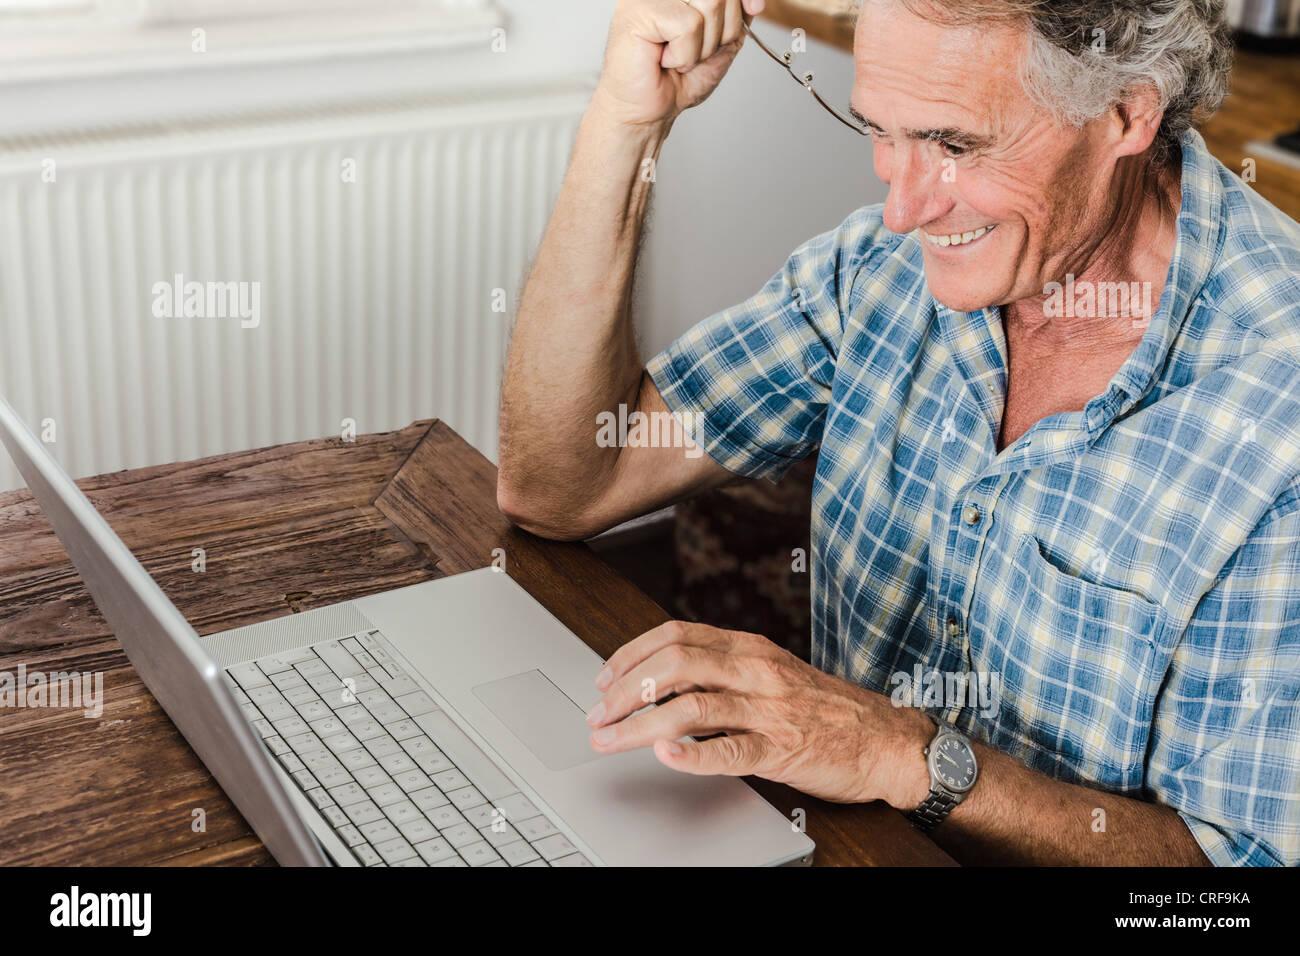 Older Man using laptop in kitchen Banque D'Images